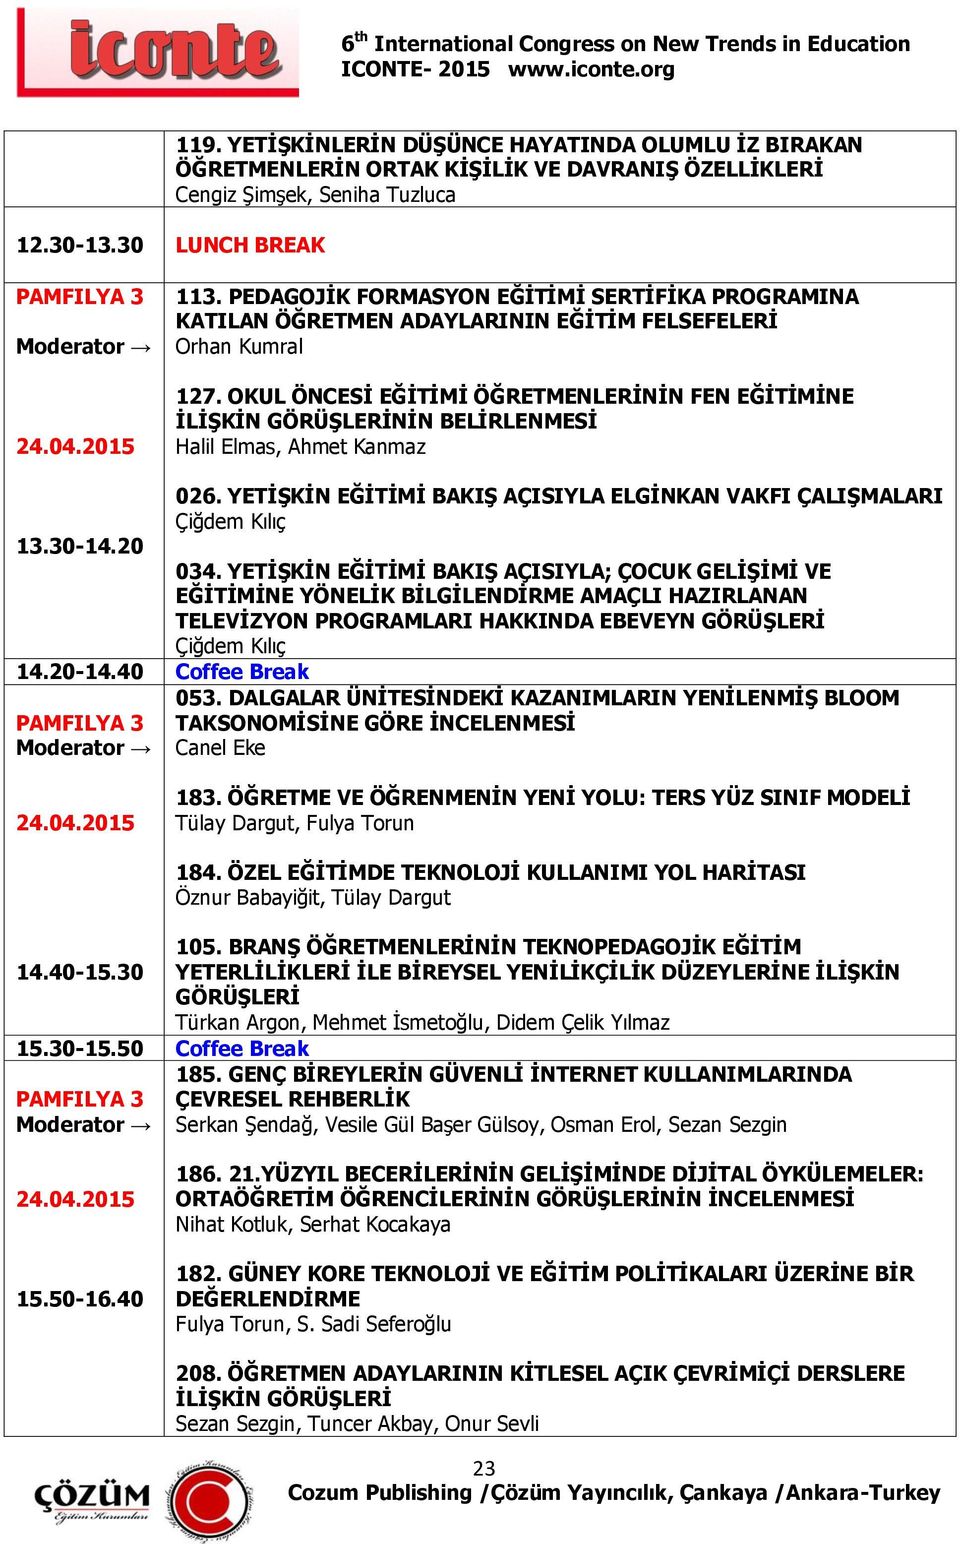 OKUL ÖNCESİ EĞİTİMİ ÖĞRETMENLERİNİN FEN EĞİTİMİNE İLİŞKİN GÖRÜŞLERİNİN BELİRLENMESİ Halil Elmas, Ahmet Kanmaz 13.30-14.20 14.20-14.40 Coffee Break 026.